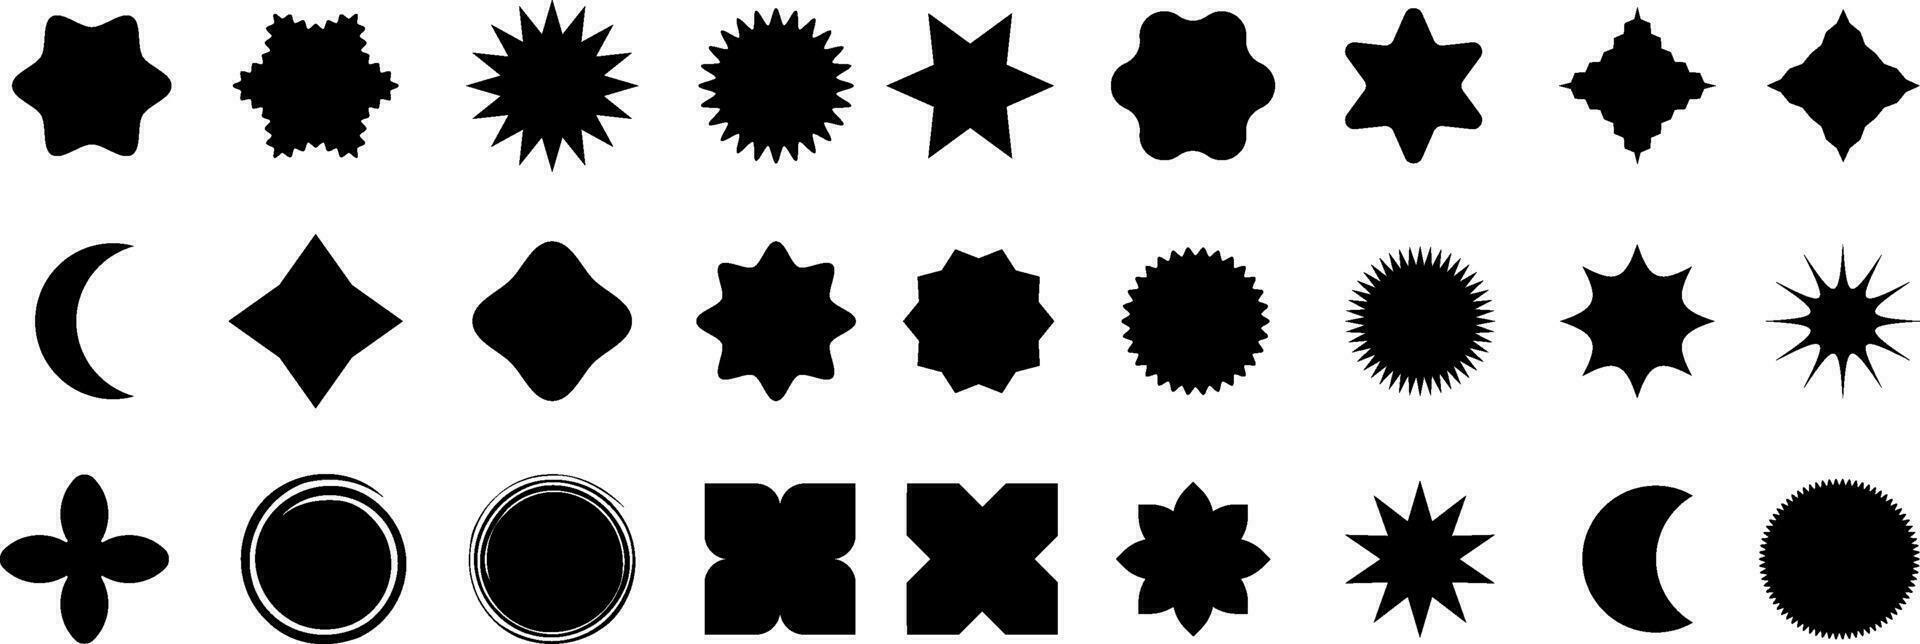 vector resumen geométrico gráfico elementos para diseño, colección de varios forma, etiquetas, formas resumen geométrico brutalista elementos. moderno elementos suizo estilo cifras estrellas flores círculos